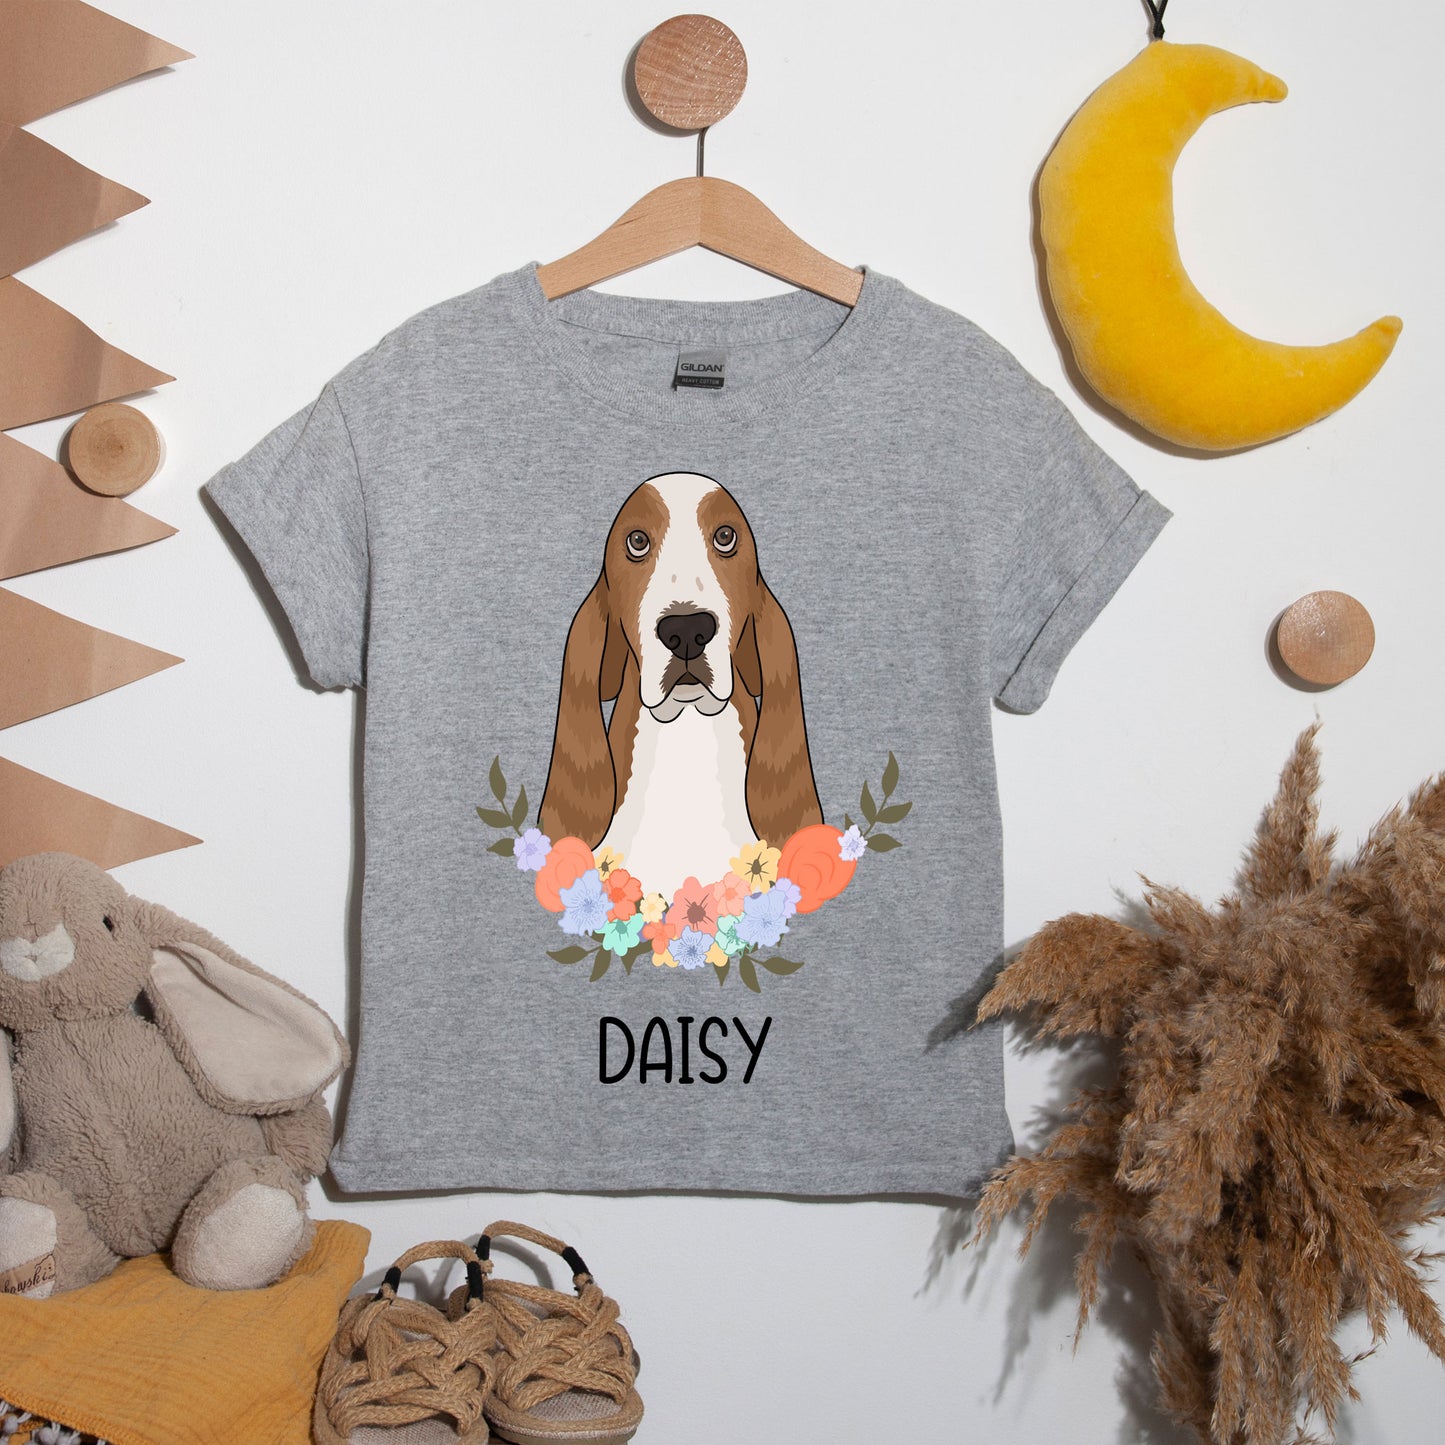 basset-hound-pet-t-shirt